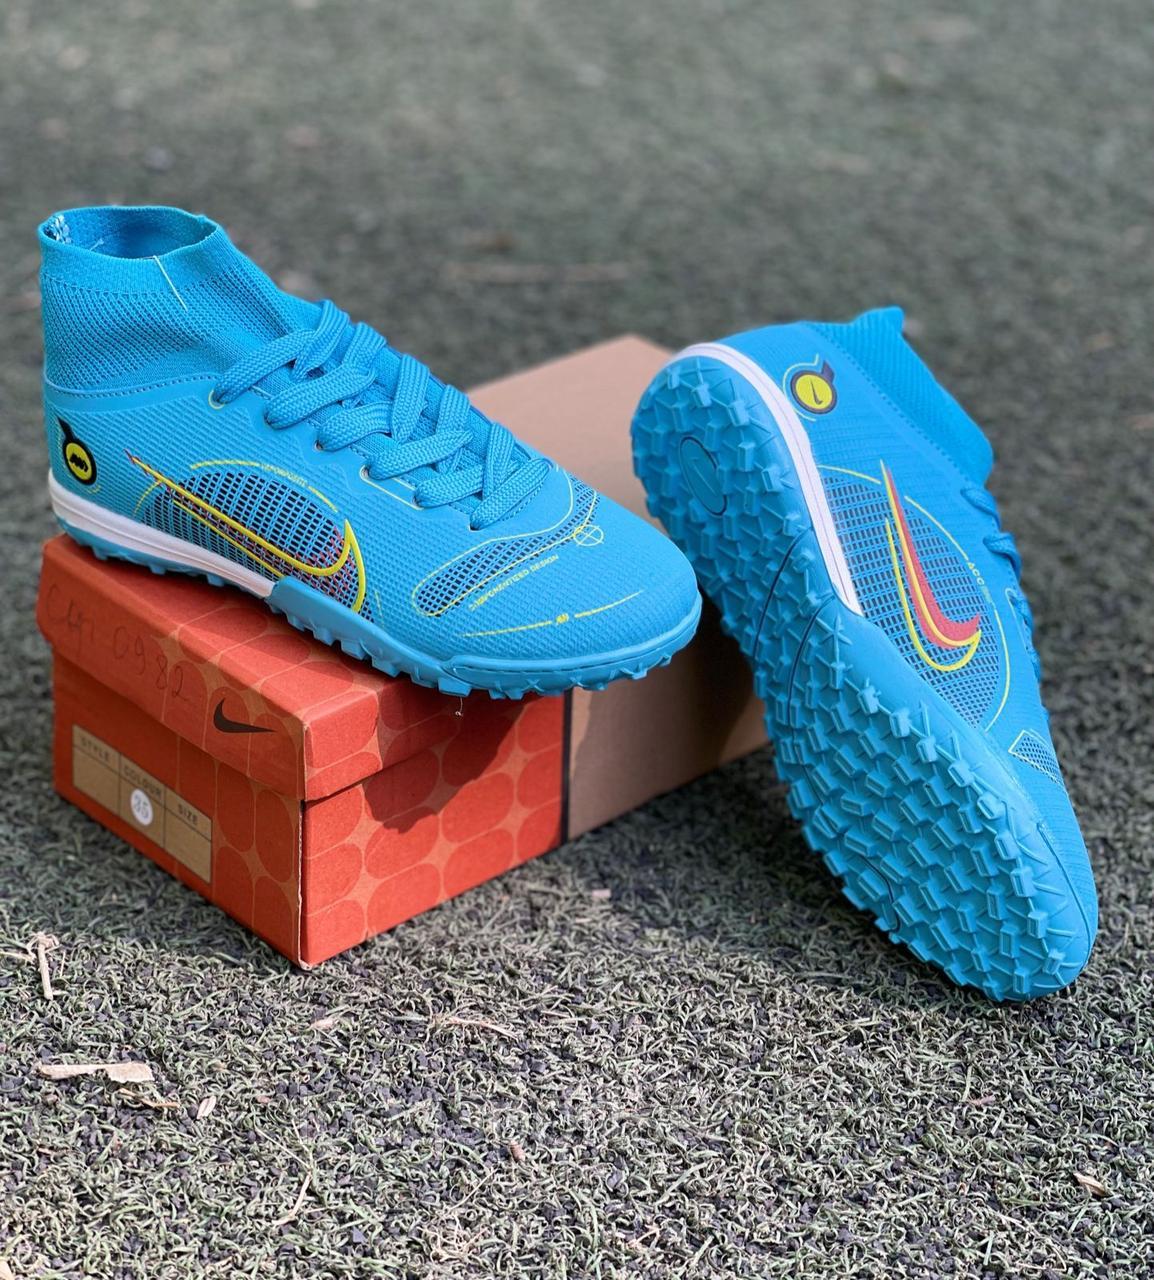 Nike Mercurial футбольные бутсы сороконожки, миники (обувь для футбола)